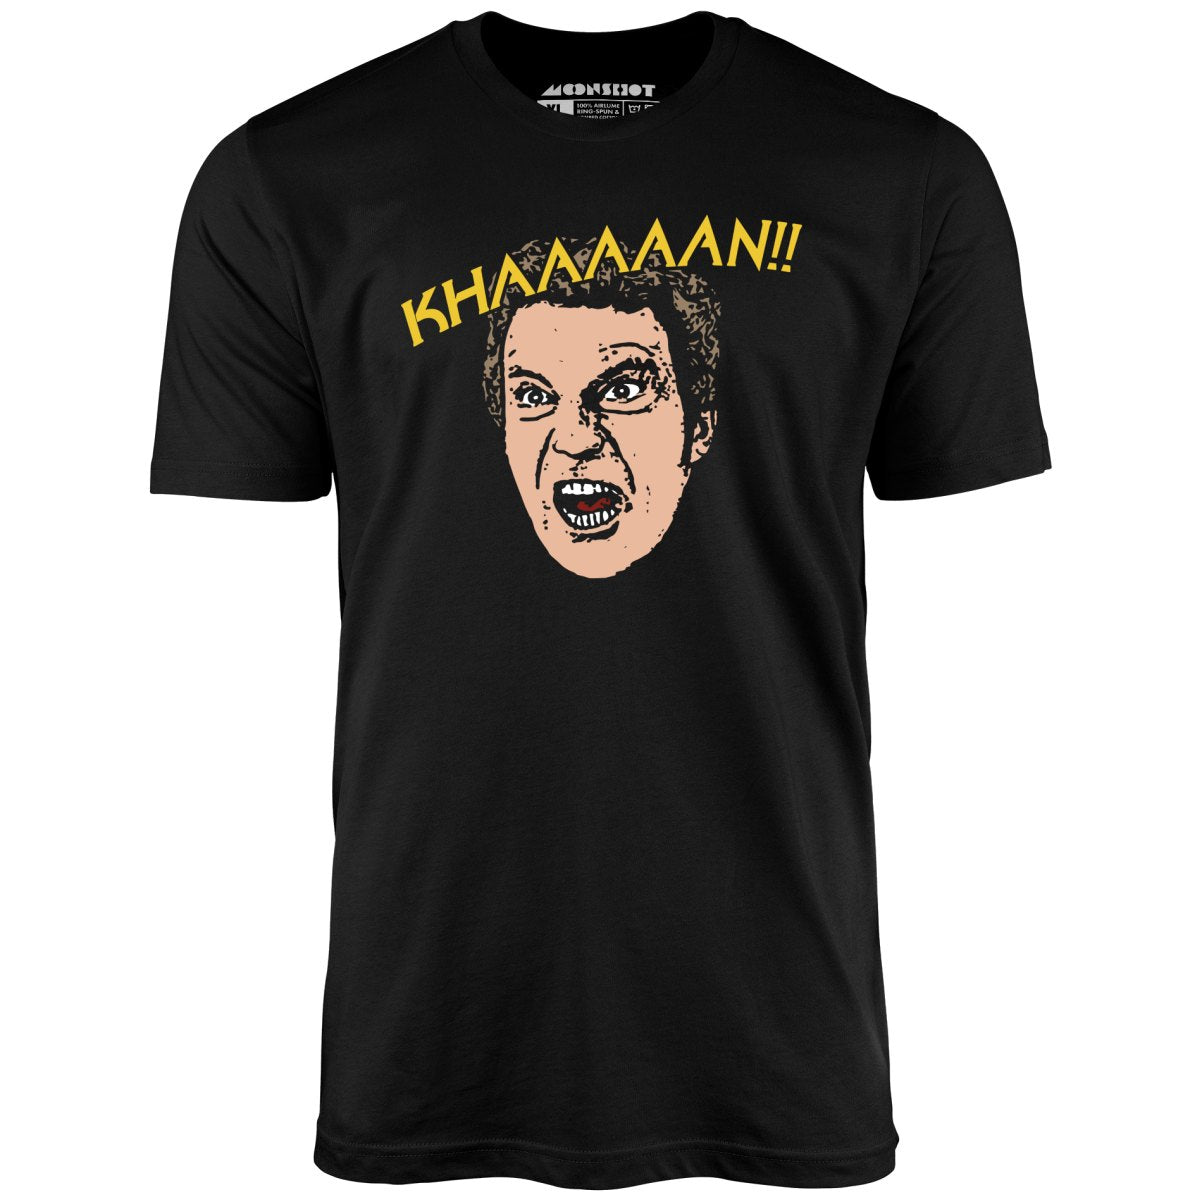 Wrath of Khan - Khaaaaan!! - Unisex T-Shirt